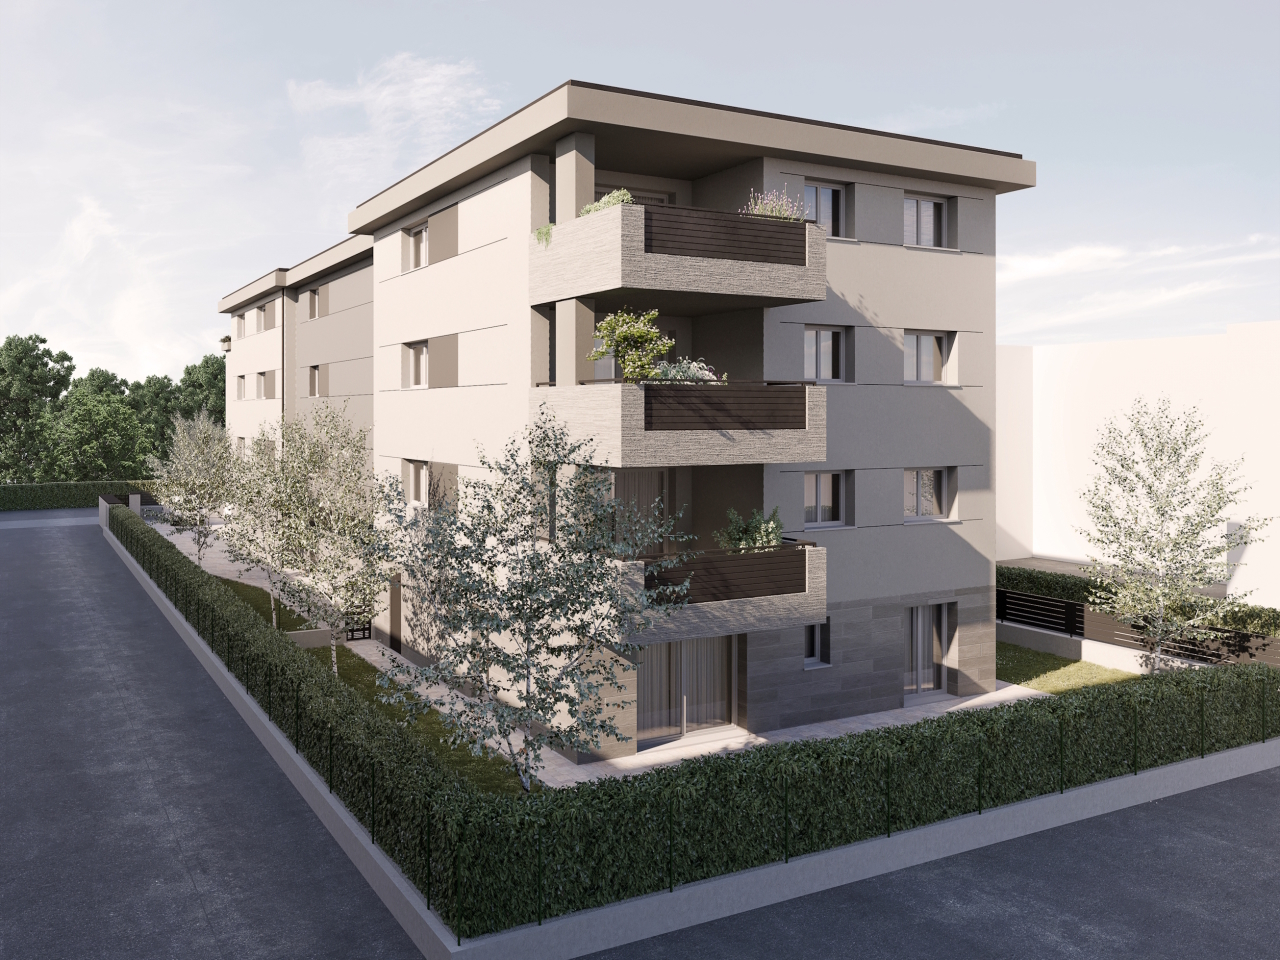 Appartamento in vendita a Castel San Pietro Terme, 3 locali, prezzo € 265.000 | PortaleAgenzieImmobiliari.it